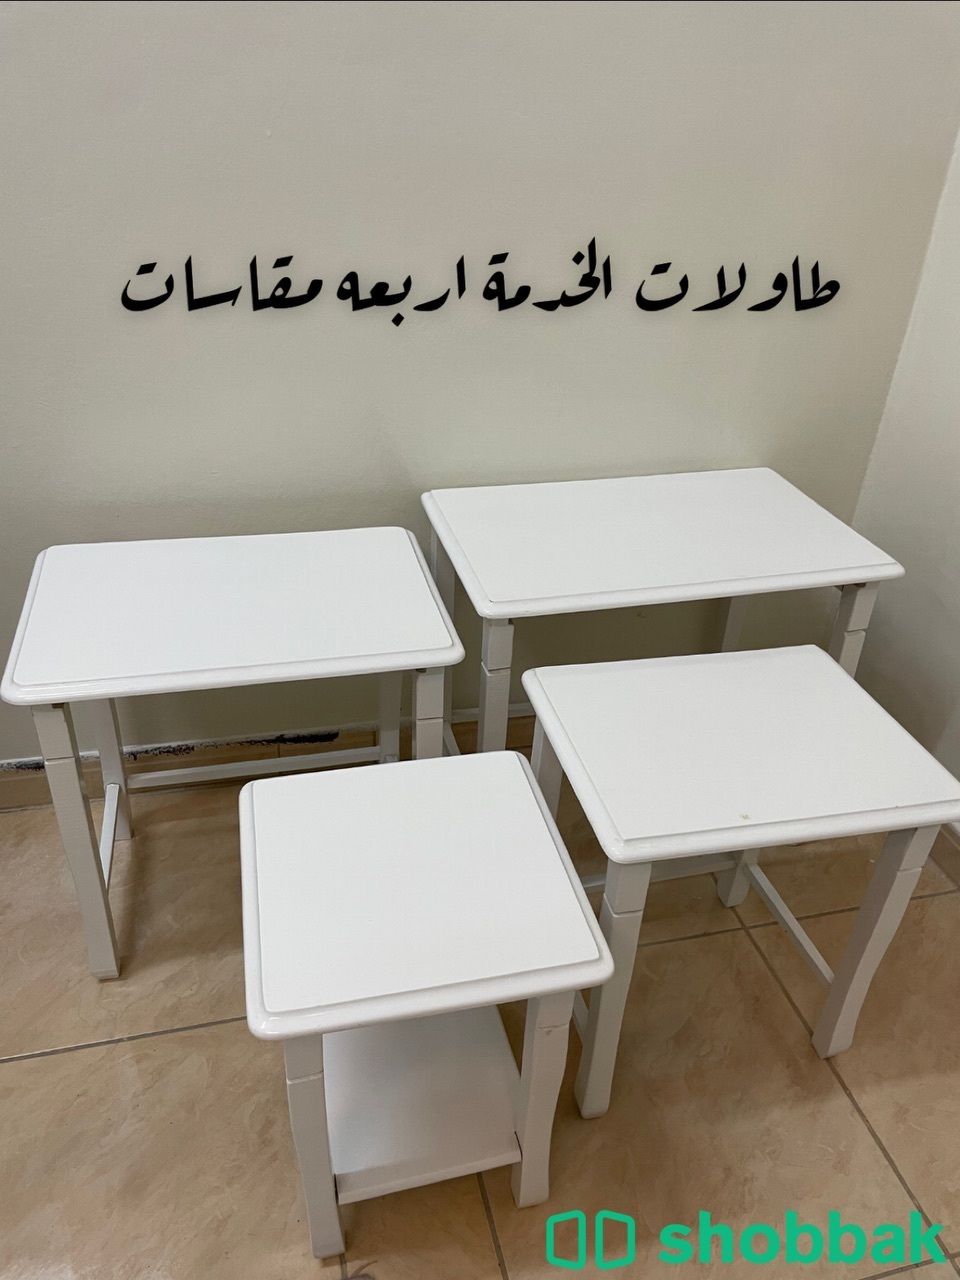 طاولة بلازما + طاولات خدمة + طاولة ضيافة للبيع المستعجل  Shobbak Saudi Arabia